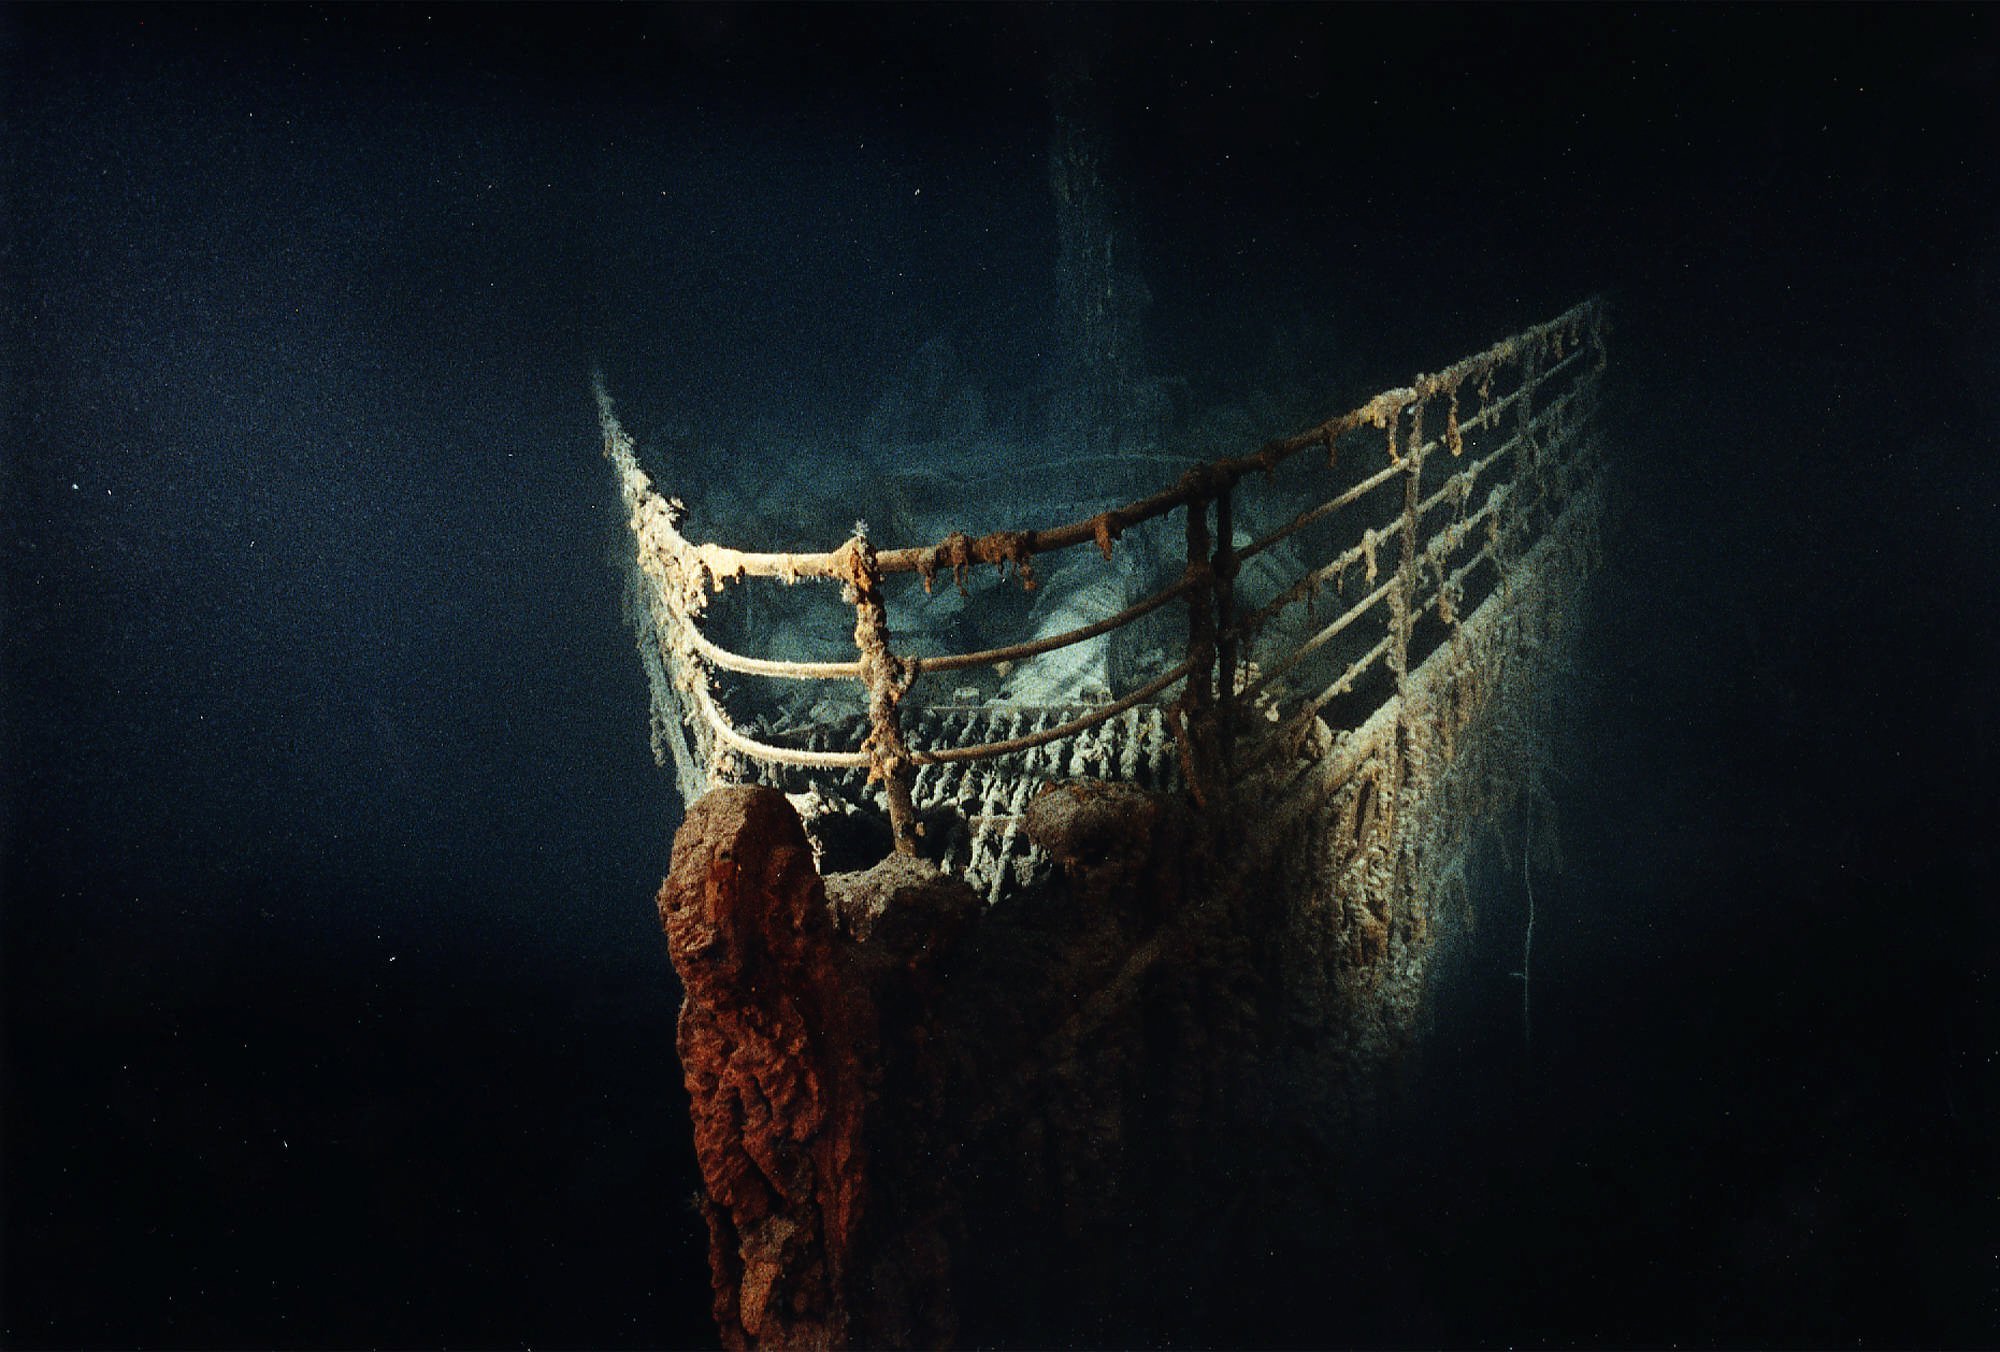 Das U-Boot war auf dem Weg, das Wrack der Titanic zu erkunden